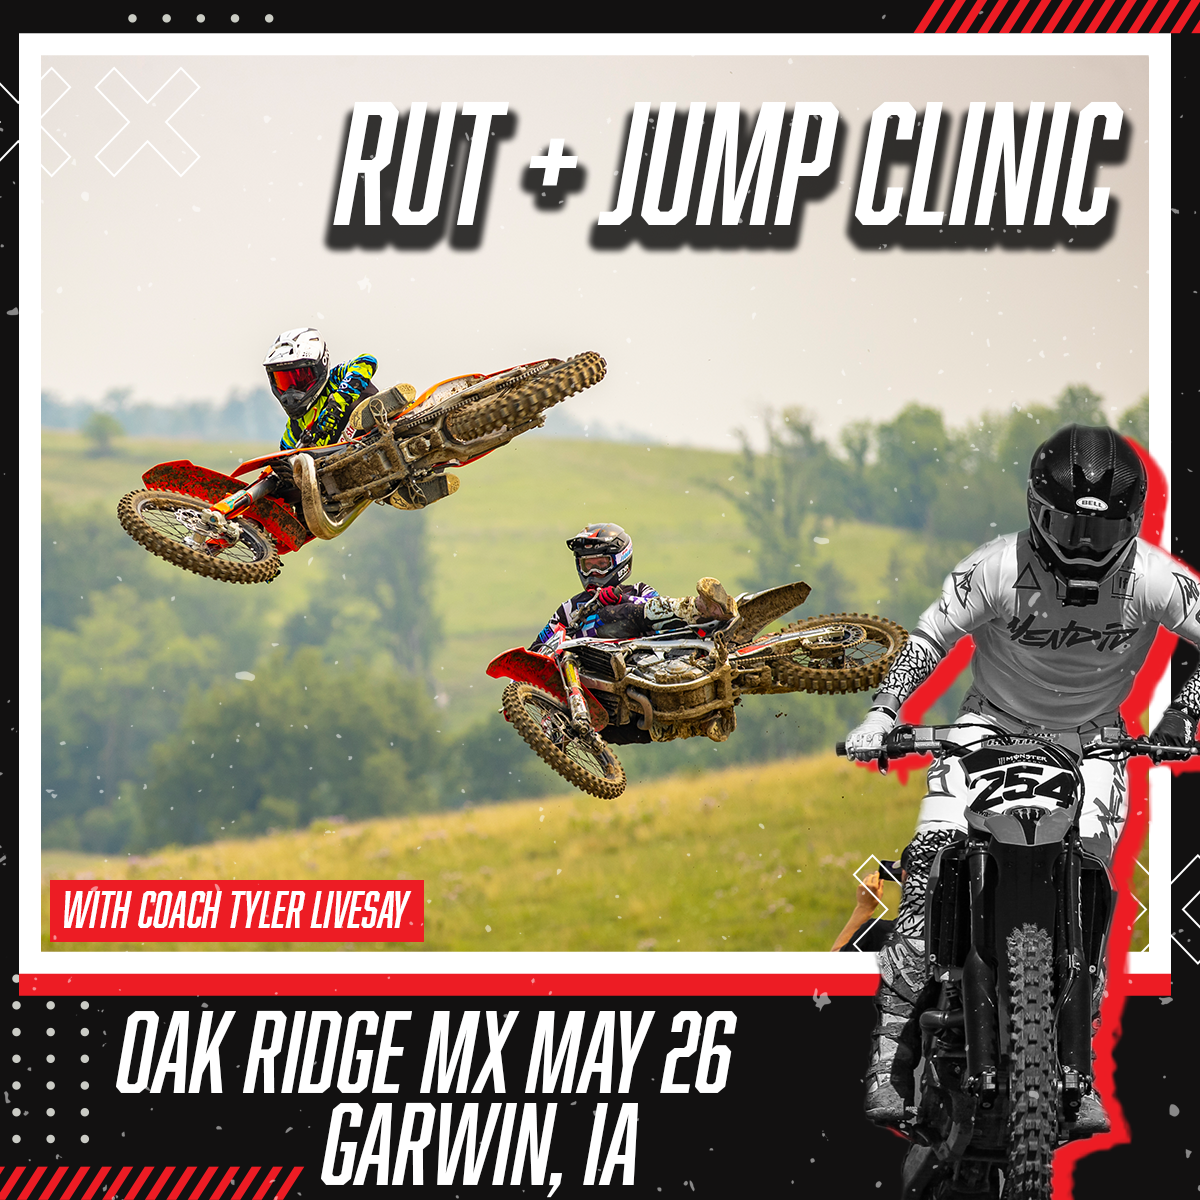 Oak Ridge MX | Garwin, IA | May 26 (Rut + Jump Clinic)